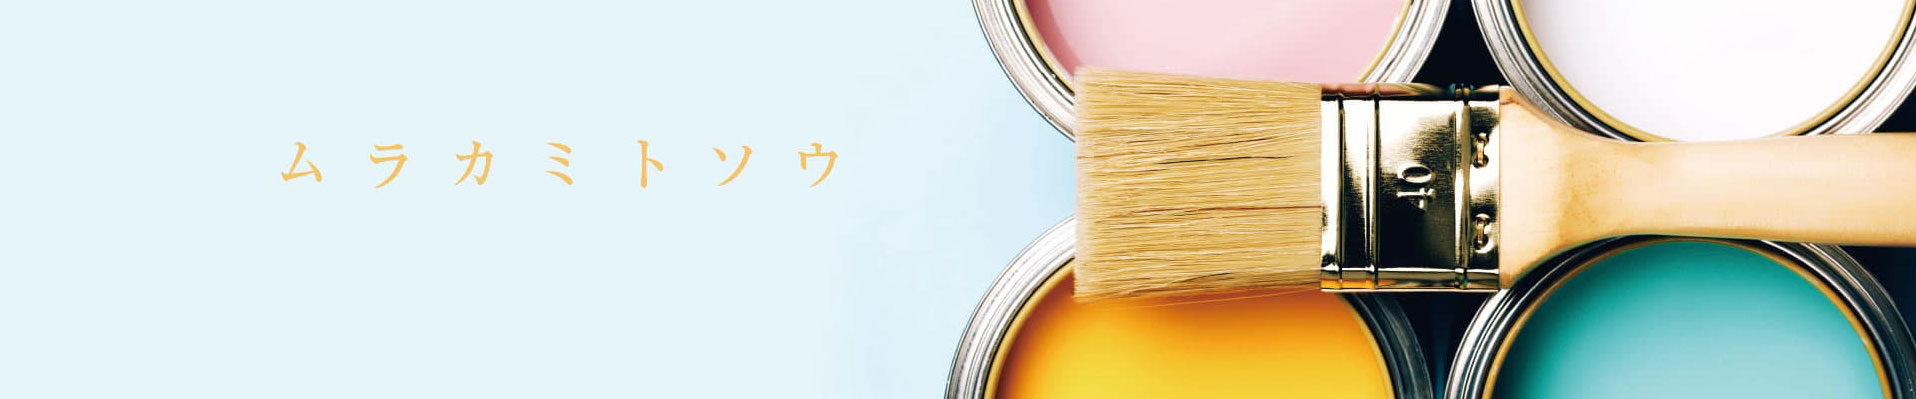 広島の職人直営店『Satis Select』への塗装工事に関するお問い合わせ・ご相談